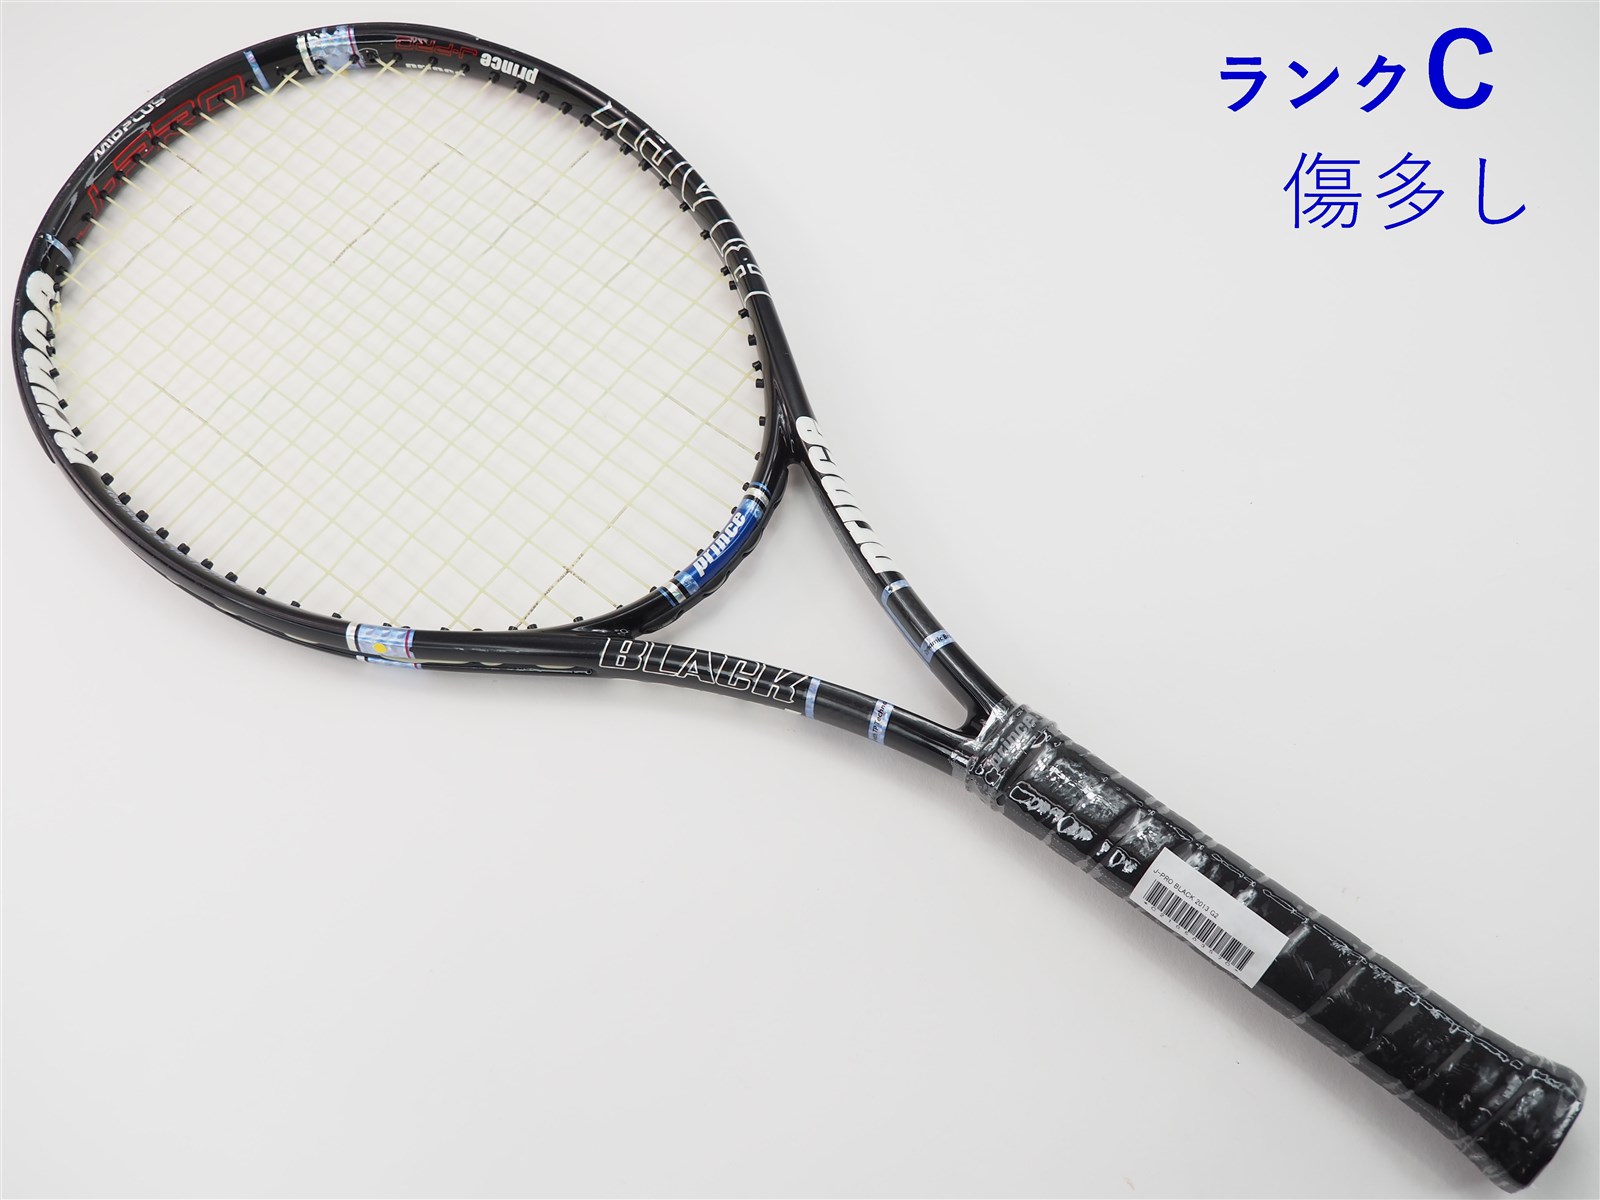 テニスラケット プリンス ジェイプロ ブラック 2013年モデル (G2